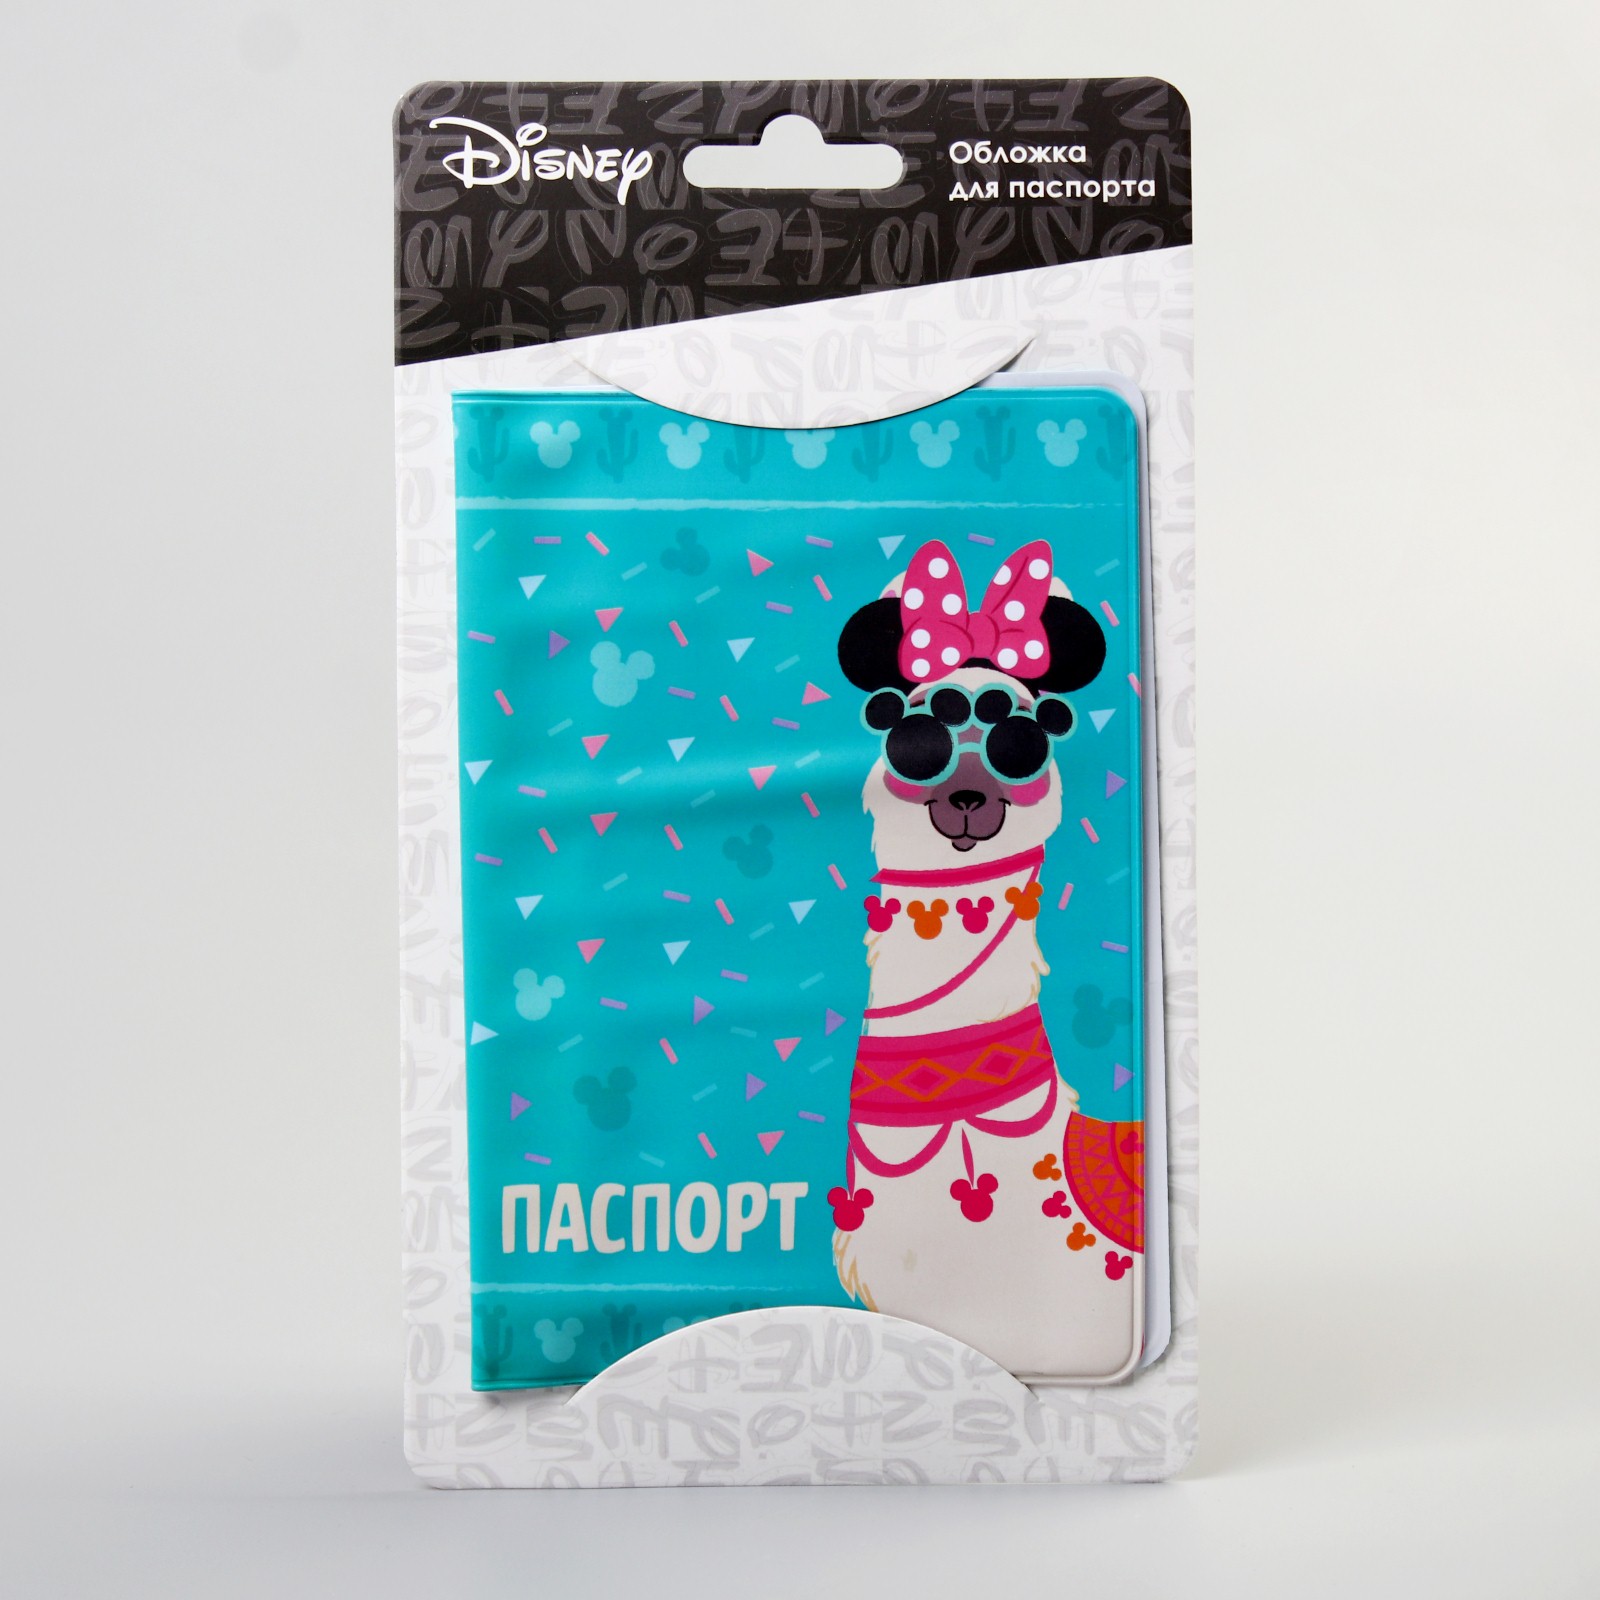 Обложка Disney для паспорта Минни Маус Disney - фото 2